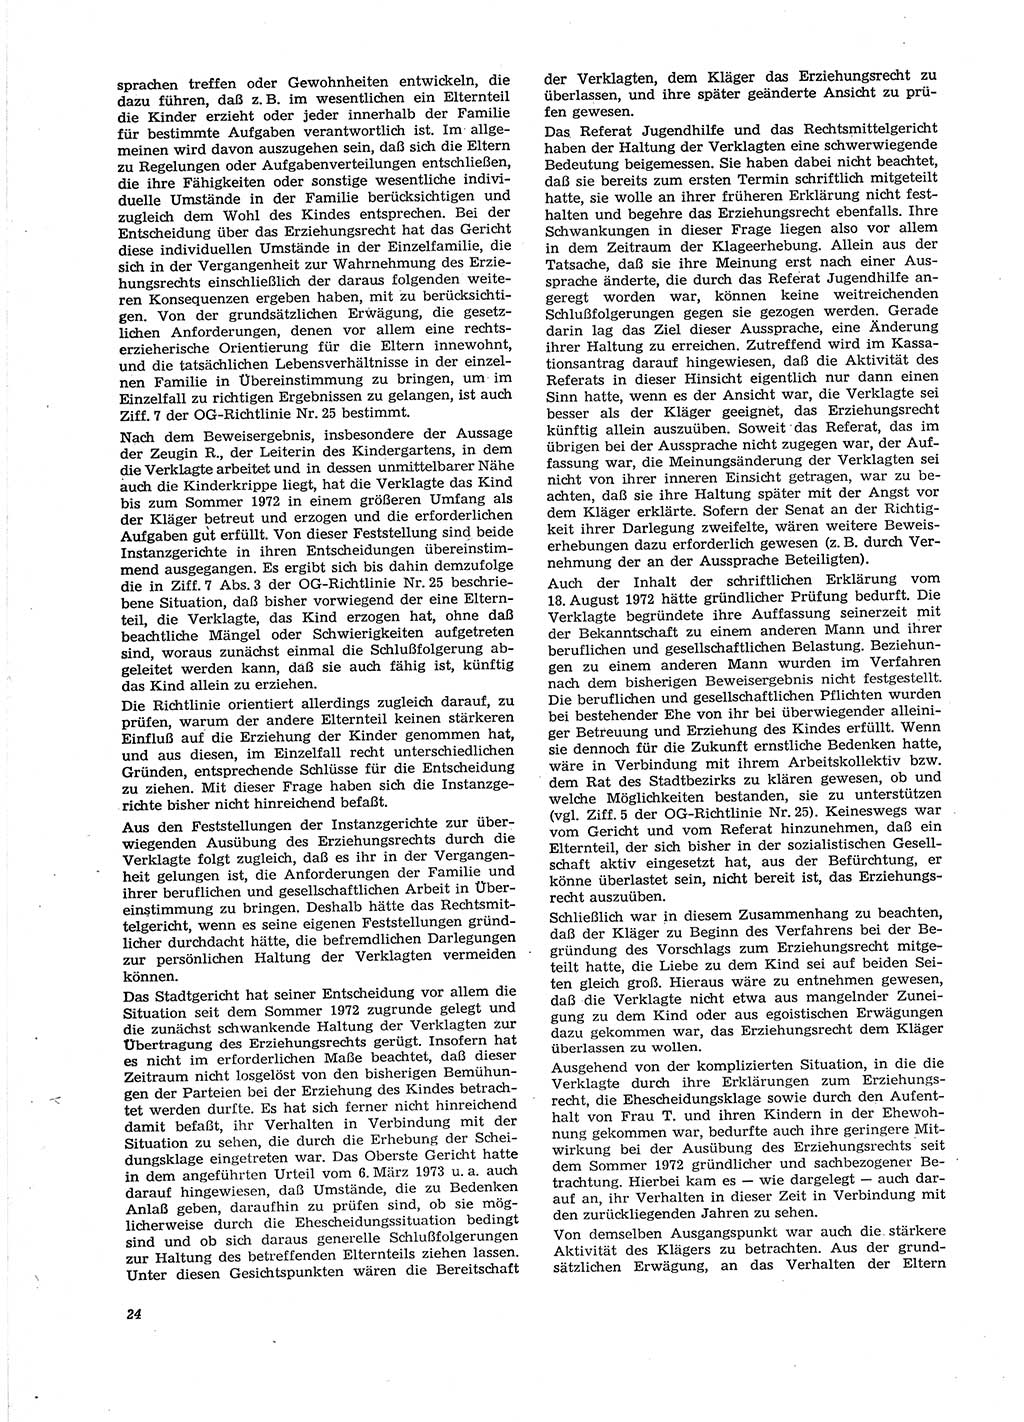 Neue Justiz (NJ), Zeitschrift für Recht und Rechtswissenschaft [Deutsche Demokratische Republik (DDR)], 29. Jahrgang 1975, Seite 24 (NJ DDR 1975, S. 24)